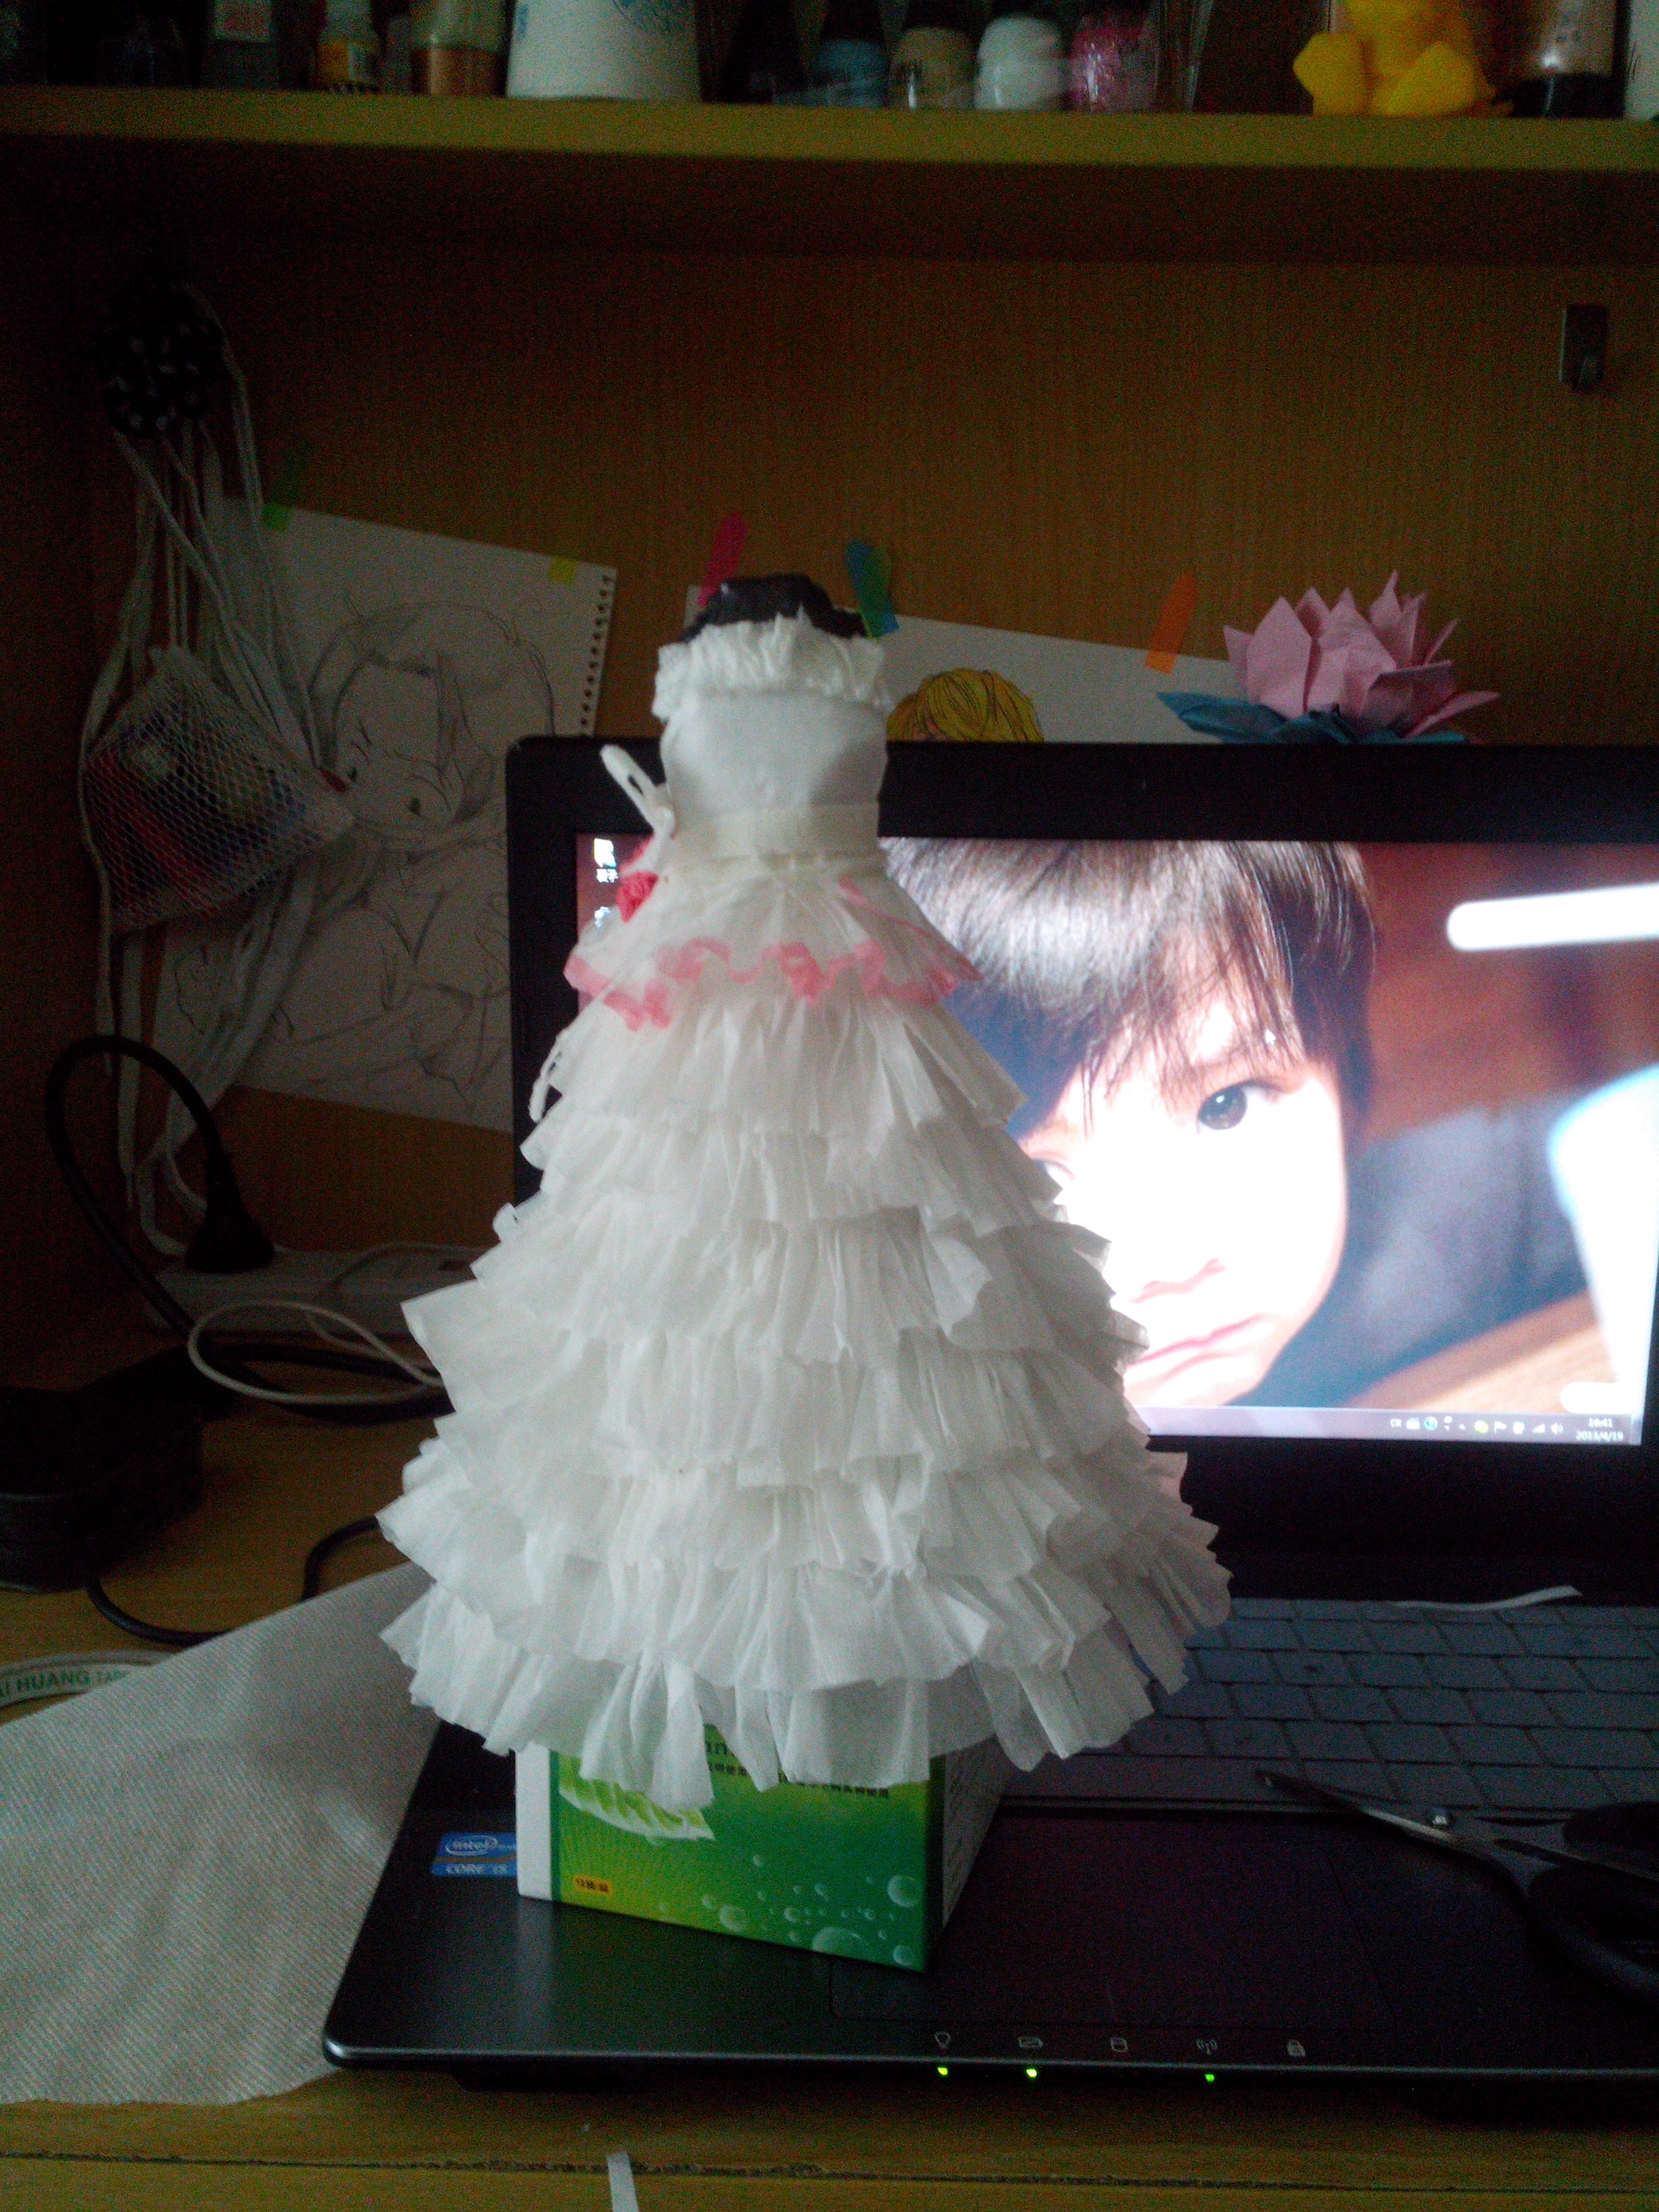 用卫生纸做的婚纱简单图片